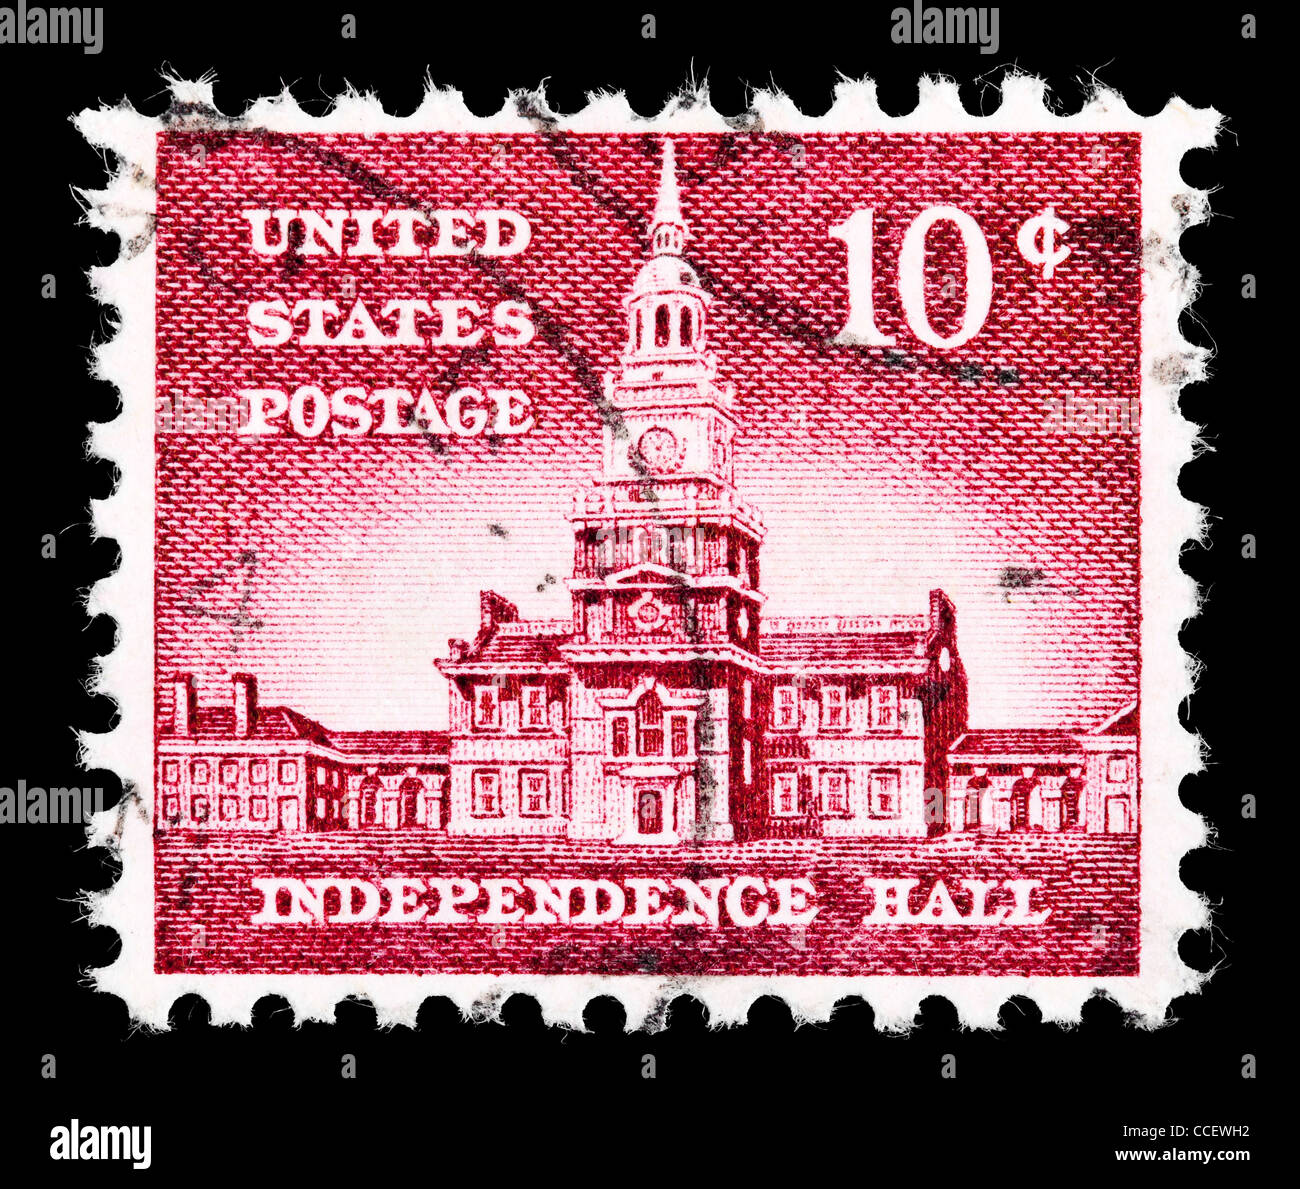 Timbre-poste : United States Postage, Independece Hall, 10 100, 1954, estampillé Banque D'Images